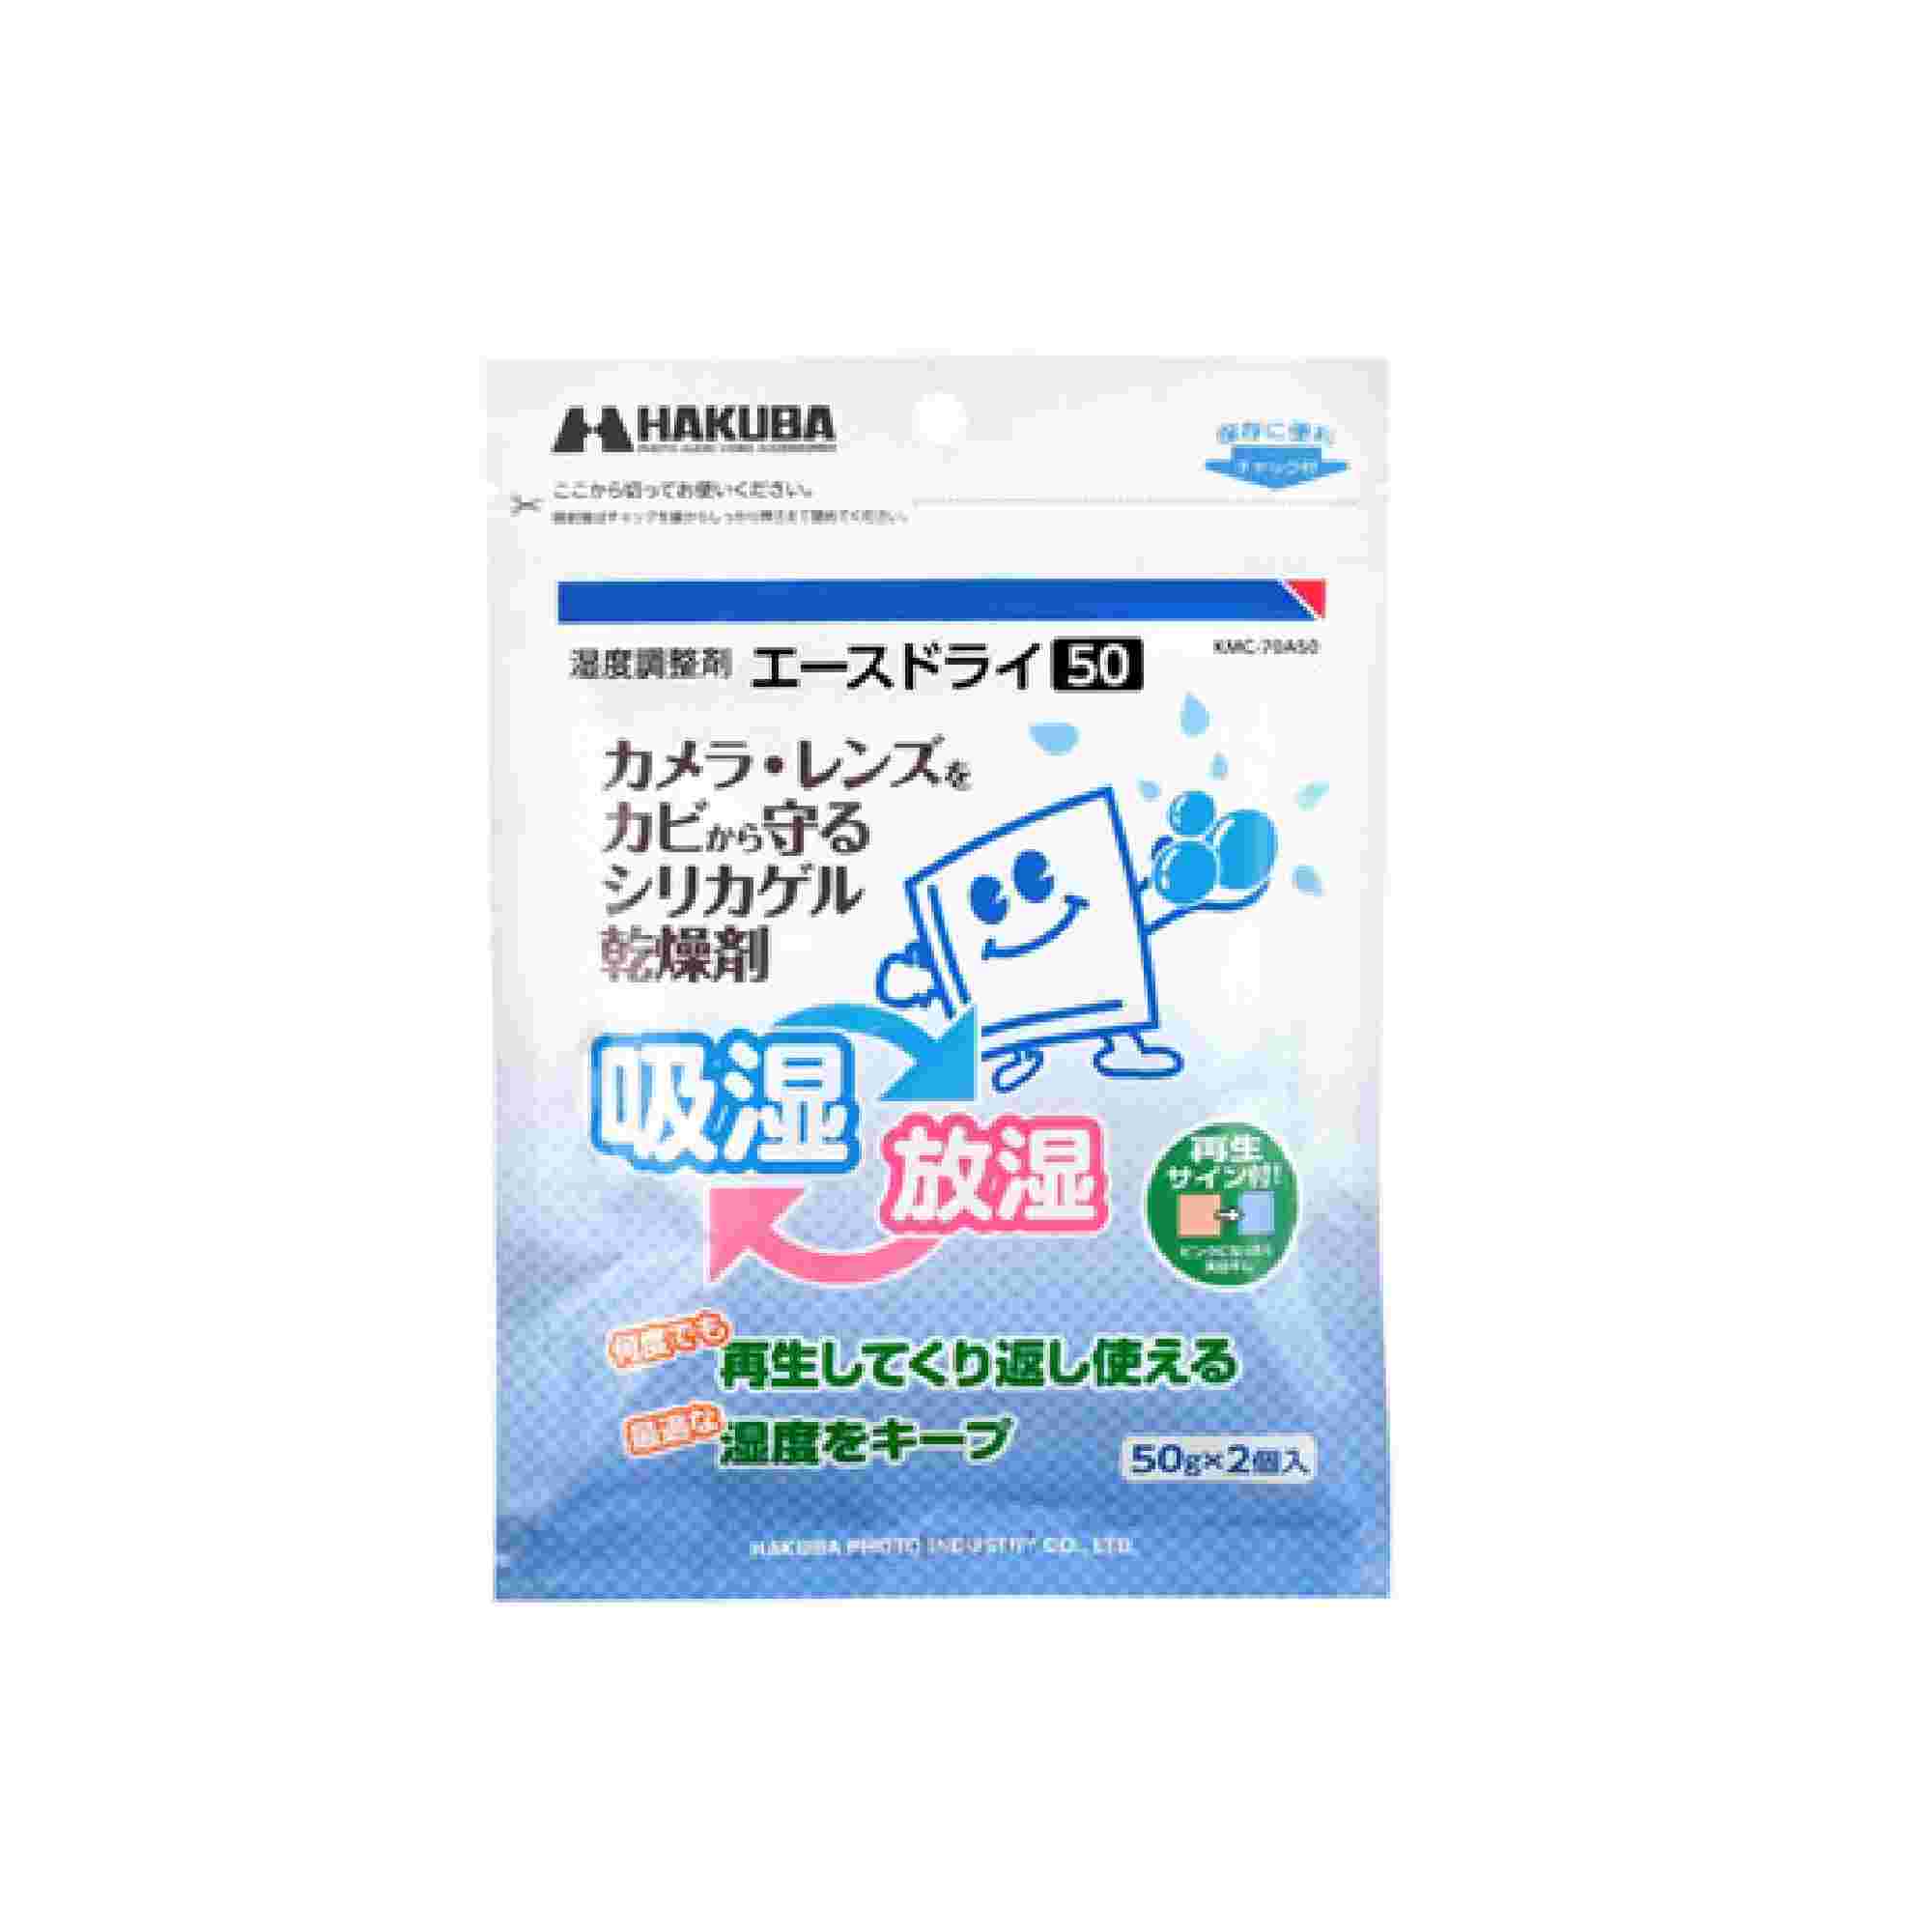 Hakuba 濕度調節劑 Ace Dry 2片裝 (50G) 清潔用品